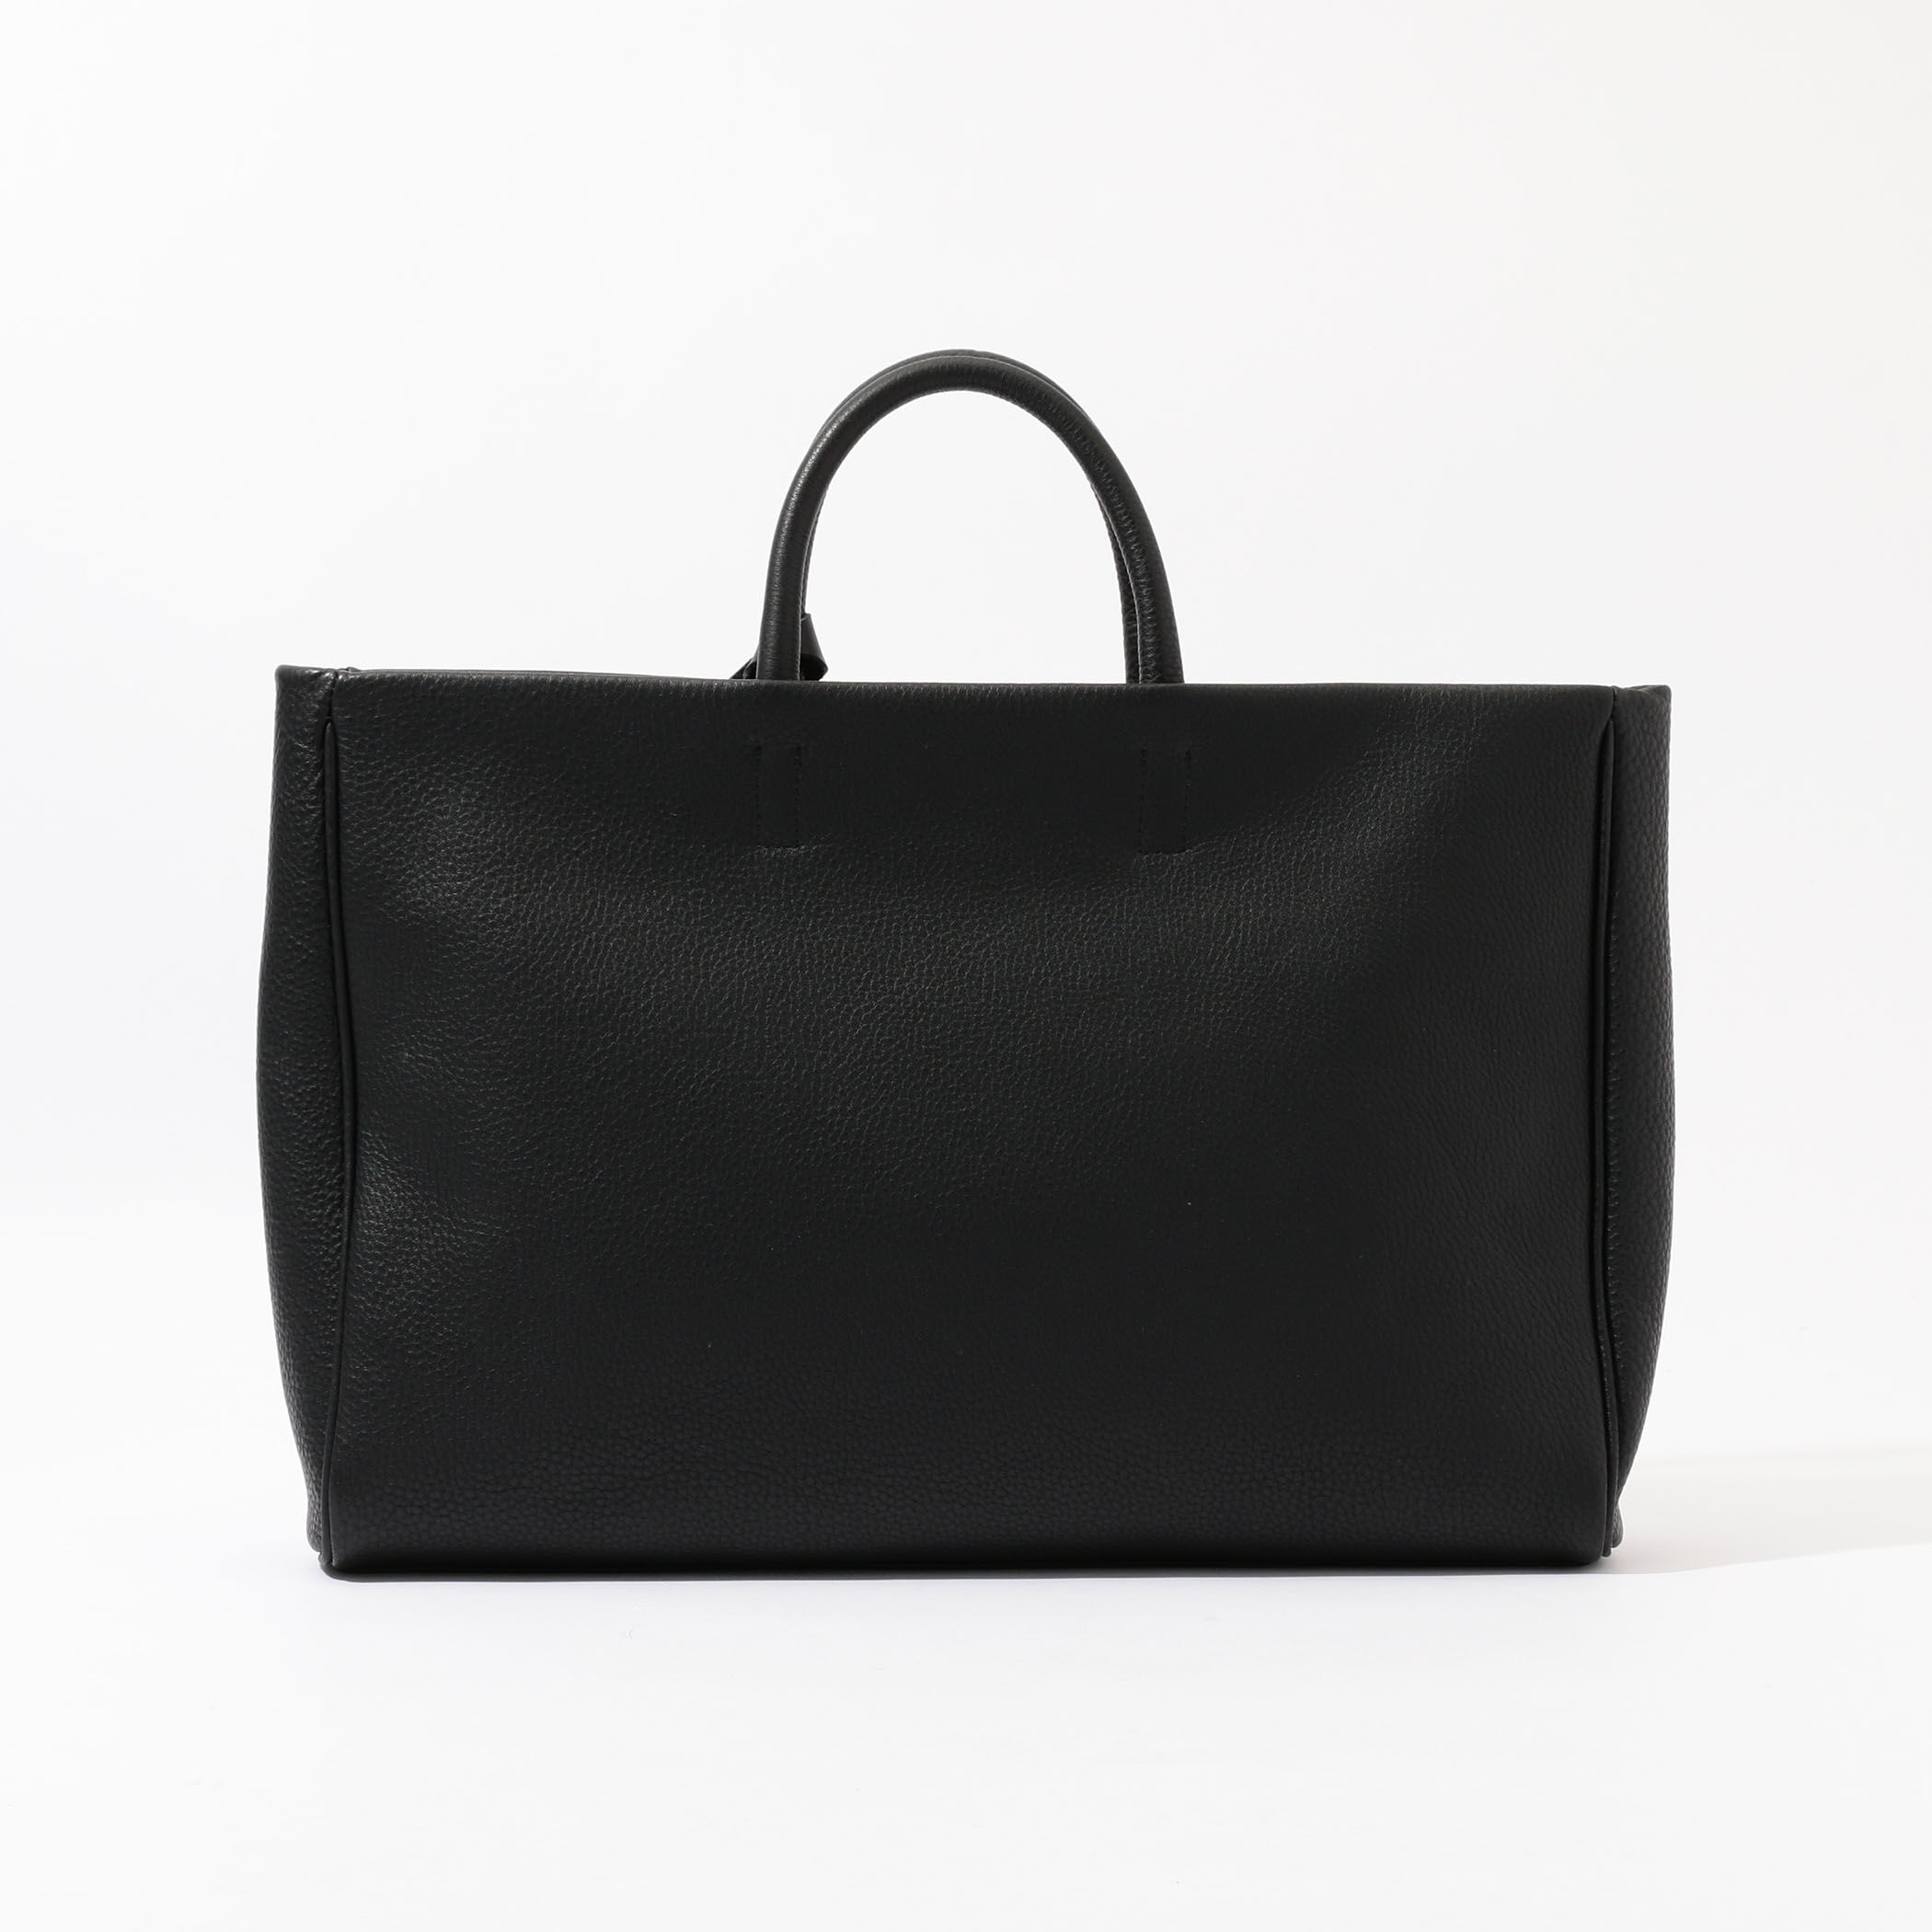 とても高級感のあるバッグです【美品】TOMORROWLAND トートバッグ 鍵付 フラップレザー グレー 黒